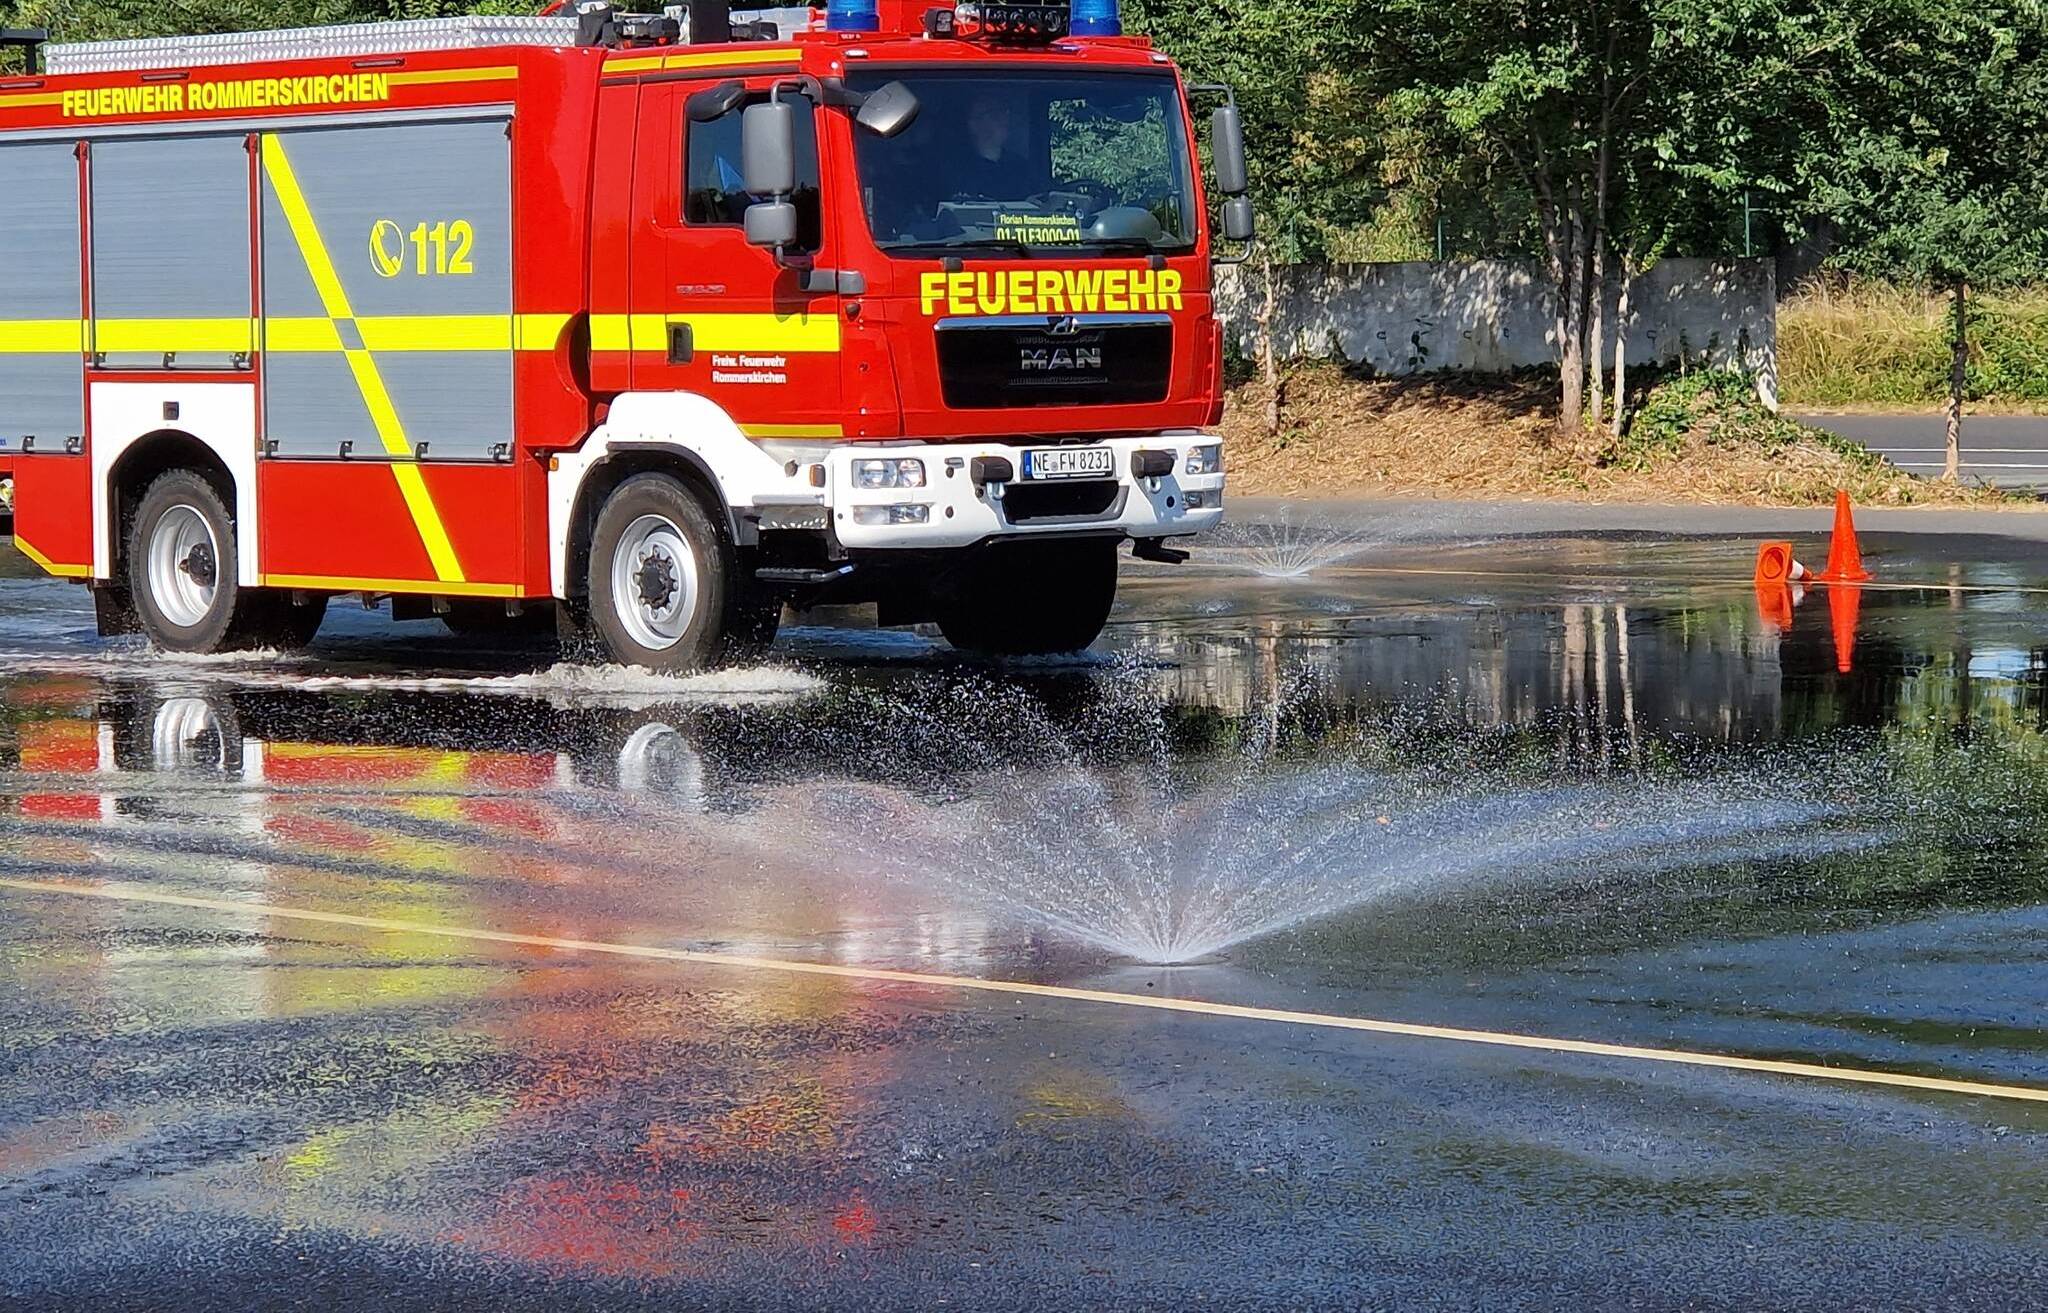 Feuerwehr Rommerskirchen im Fahrsicherheitszentrum​